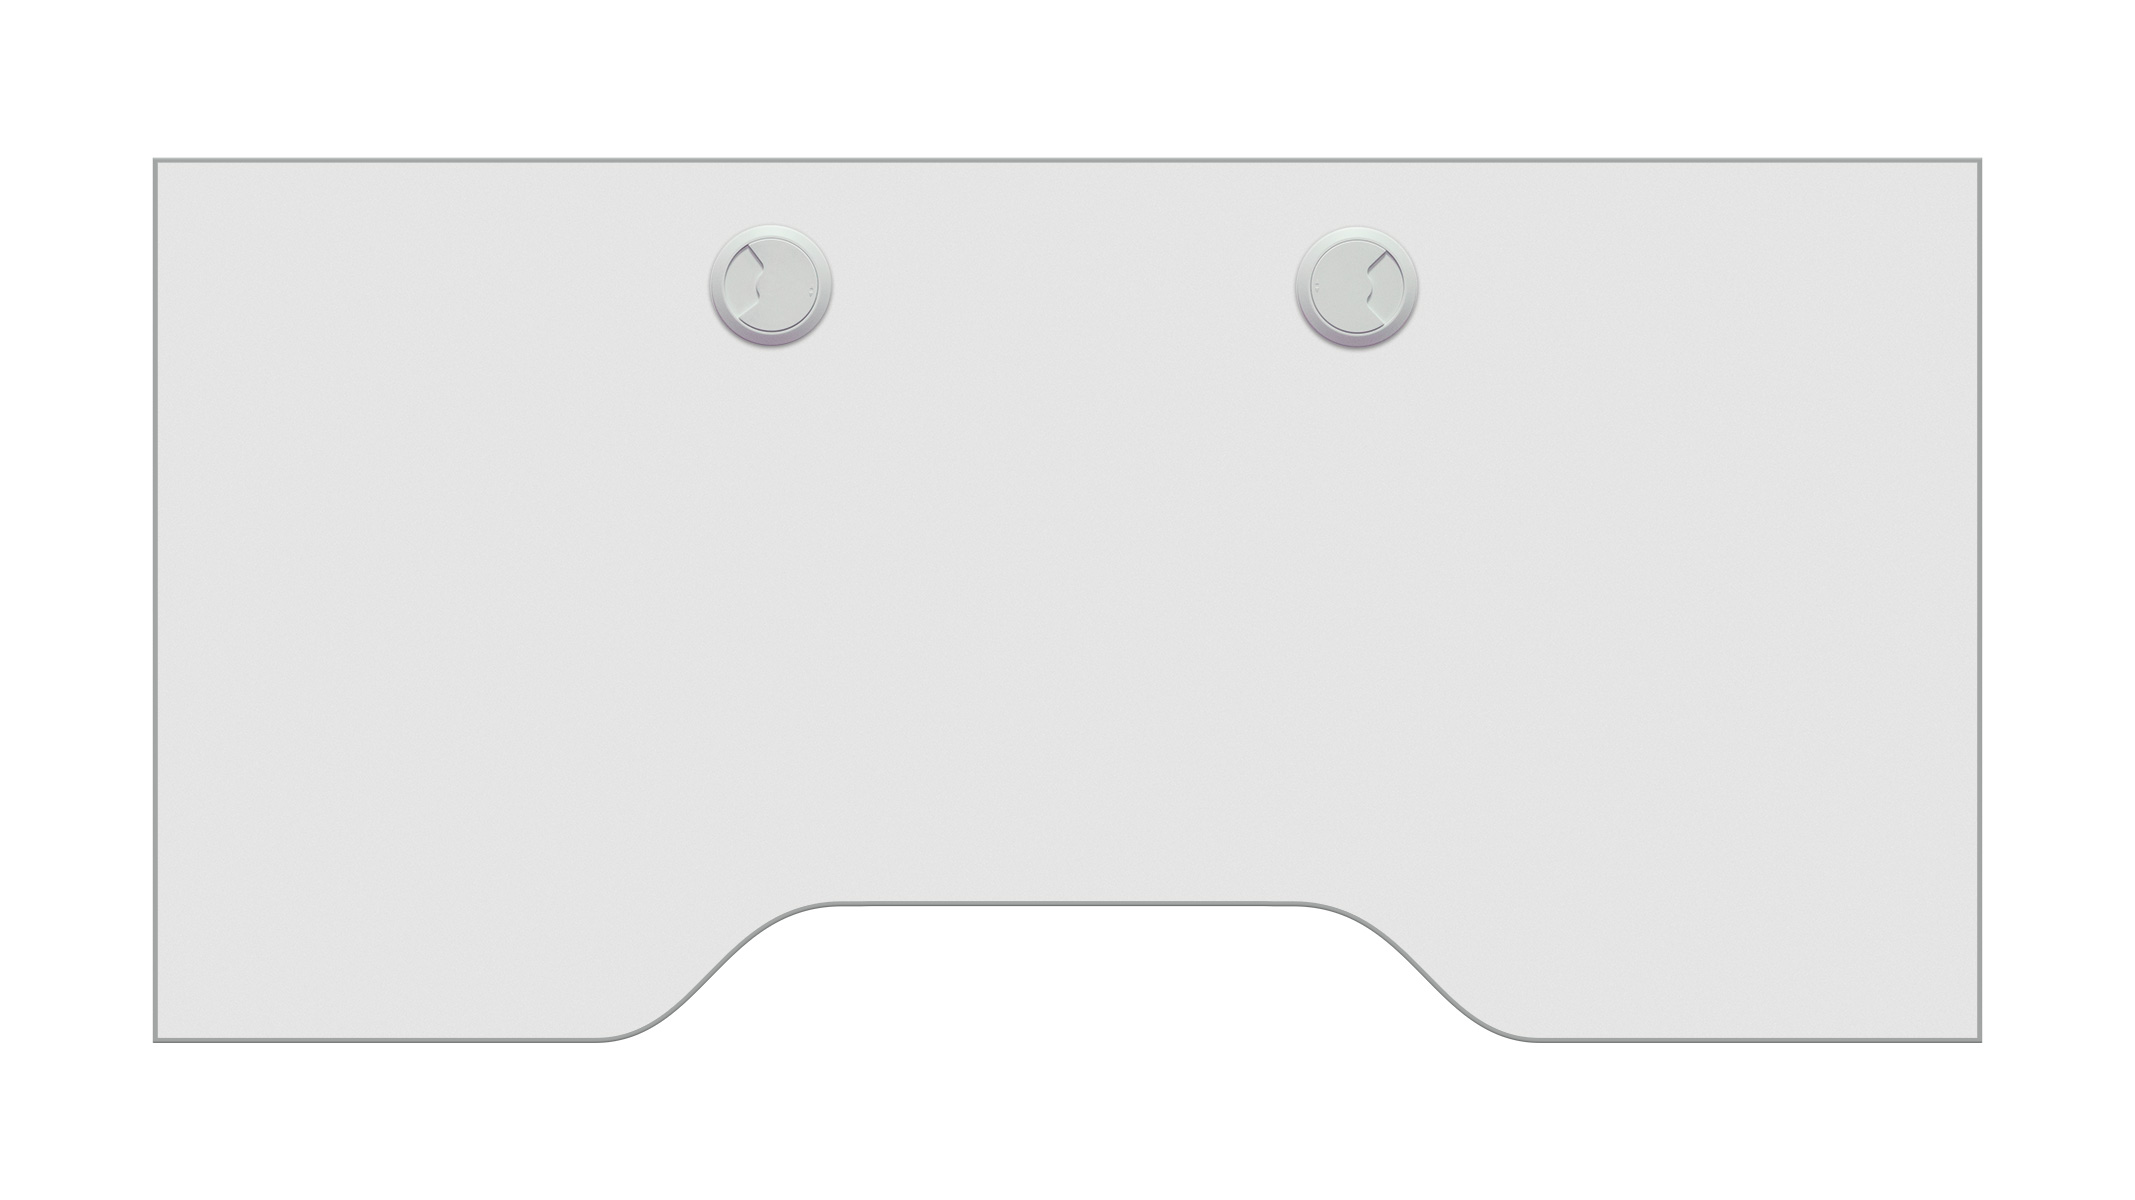 Ablageplatte, durchgehend, weiß, Sonderausstattung für Ergolift Evolution 120 cm